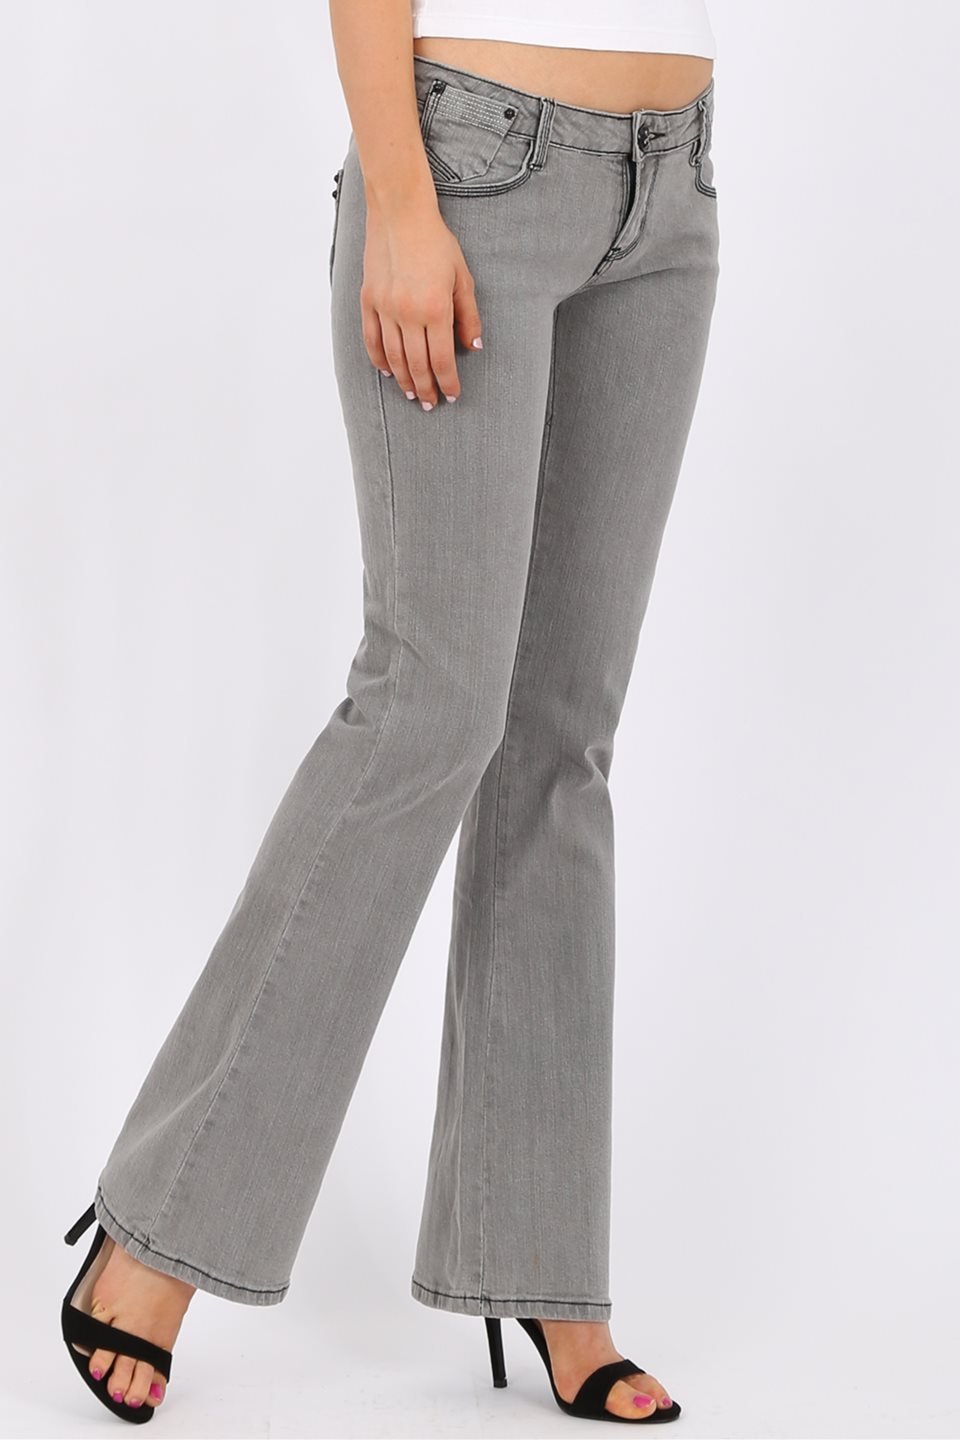 MISS PINKI Noelle bootlegs Jeans in grey